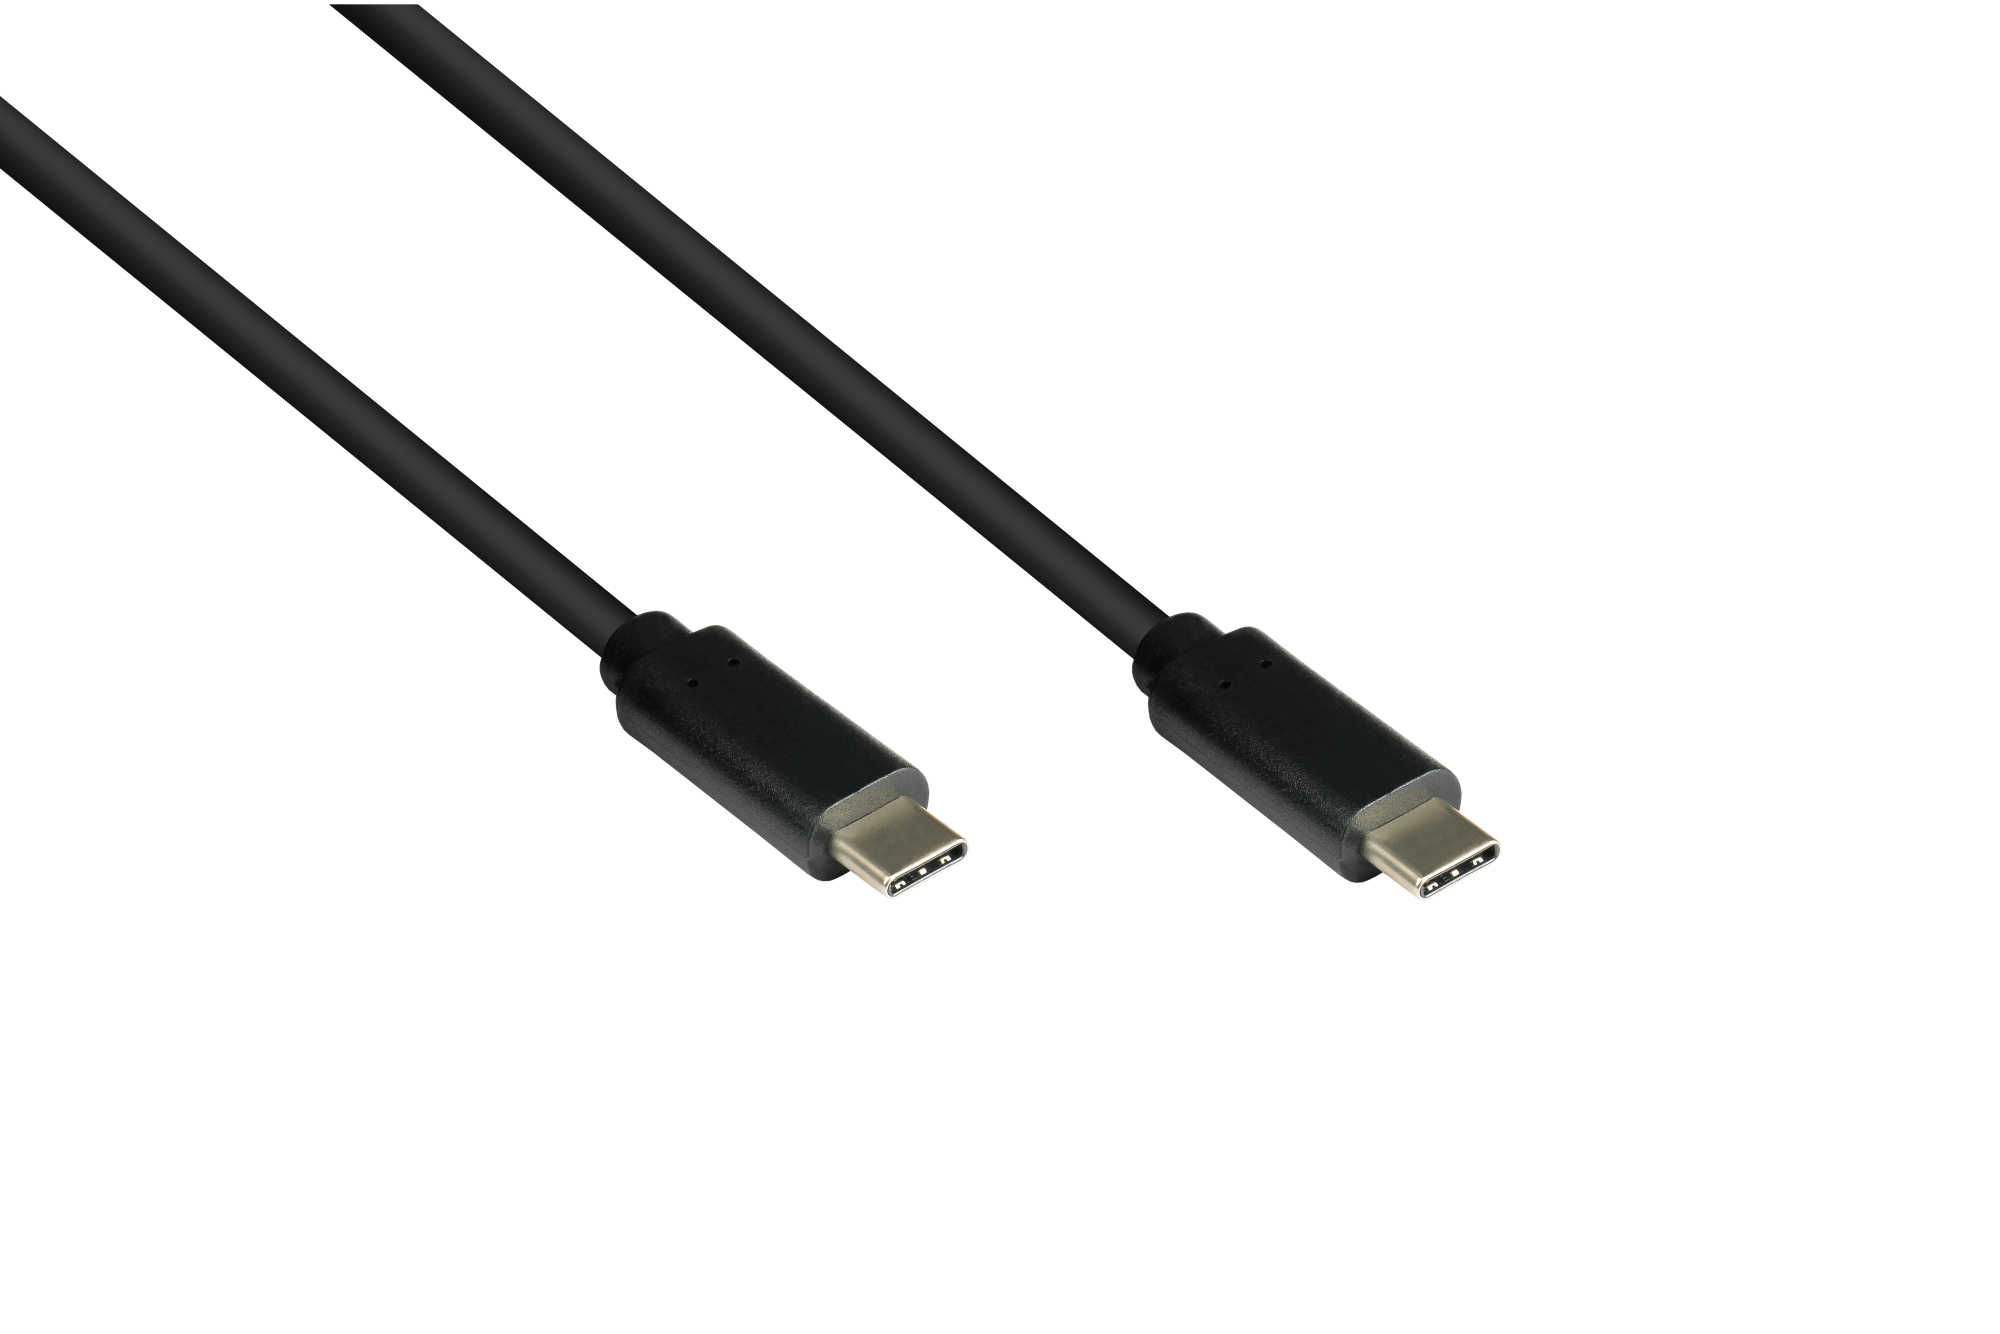 Lade- und Datenkabel USB 3.1 (Gen.1), USB-C™ Stecker beidseitig, CU, schwarz, 2m